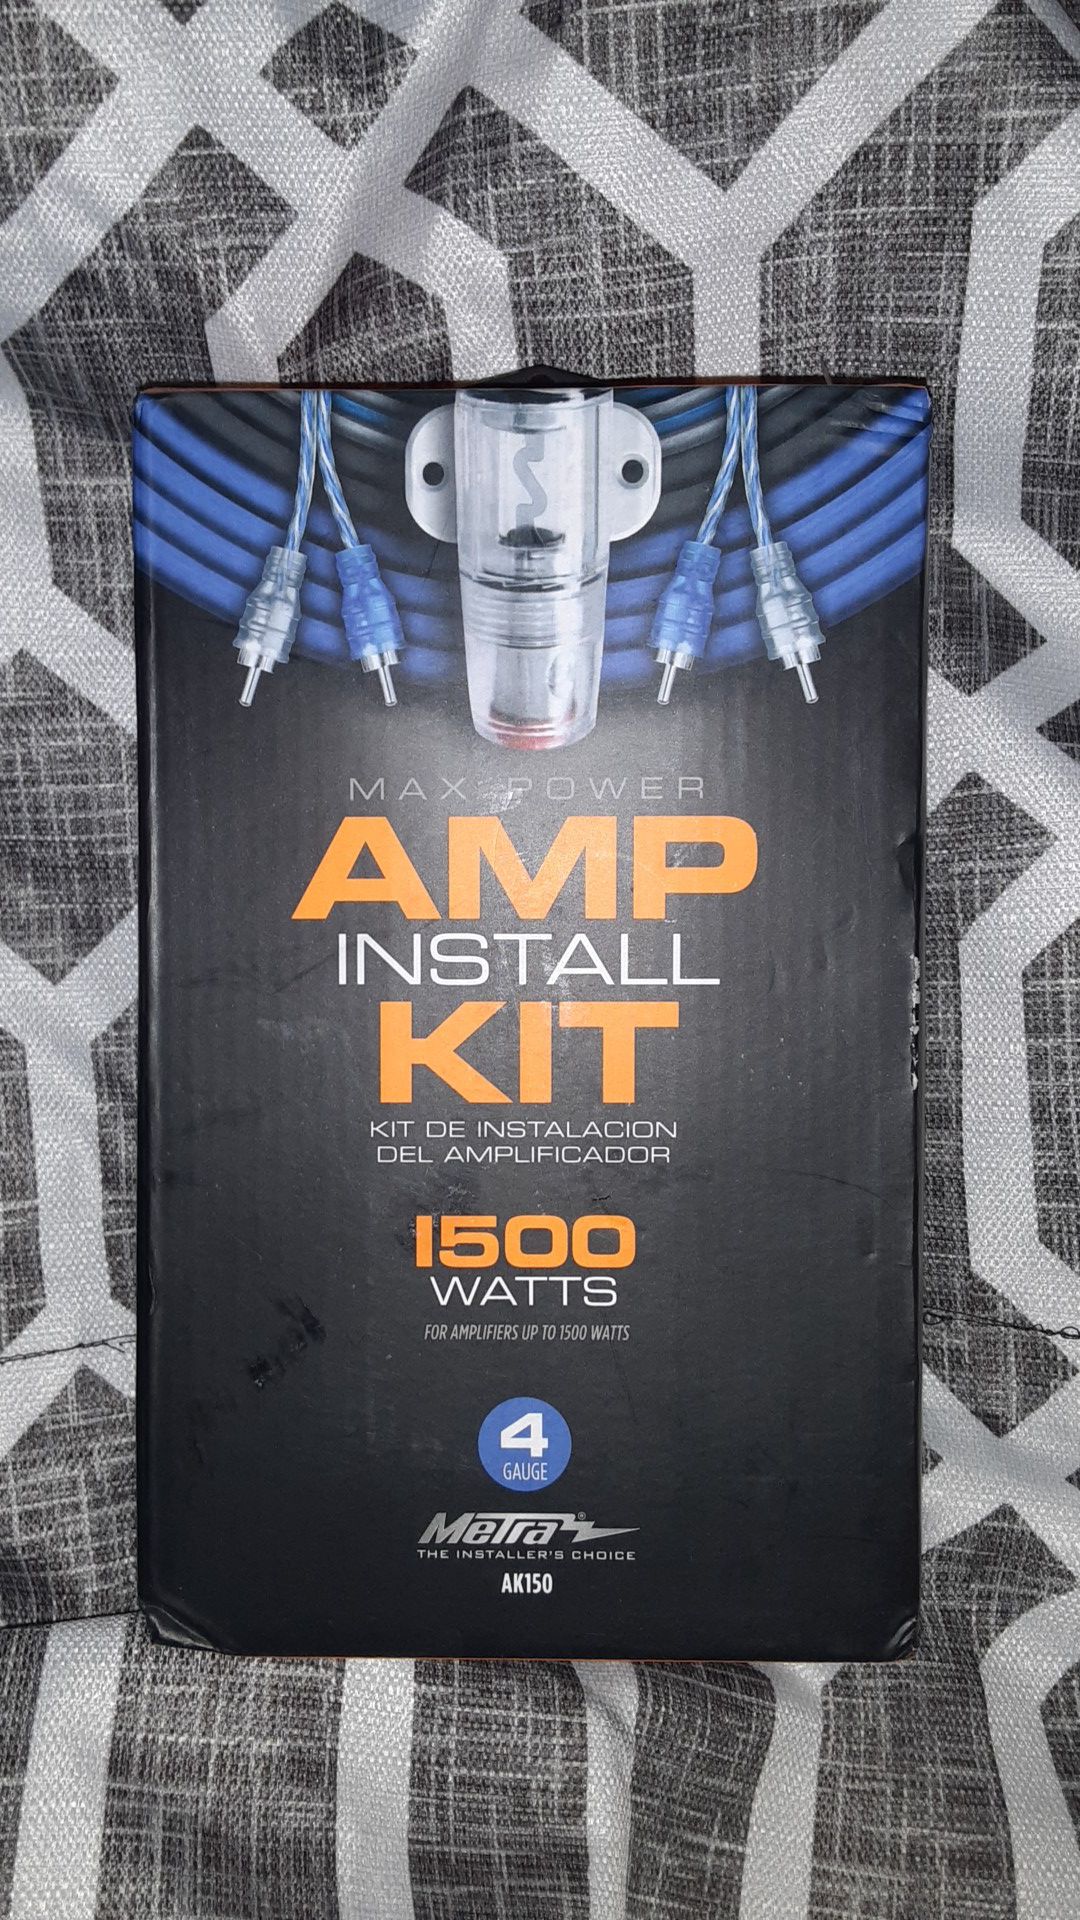 Amp installation kit